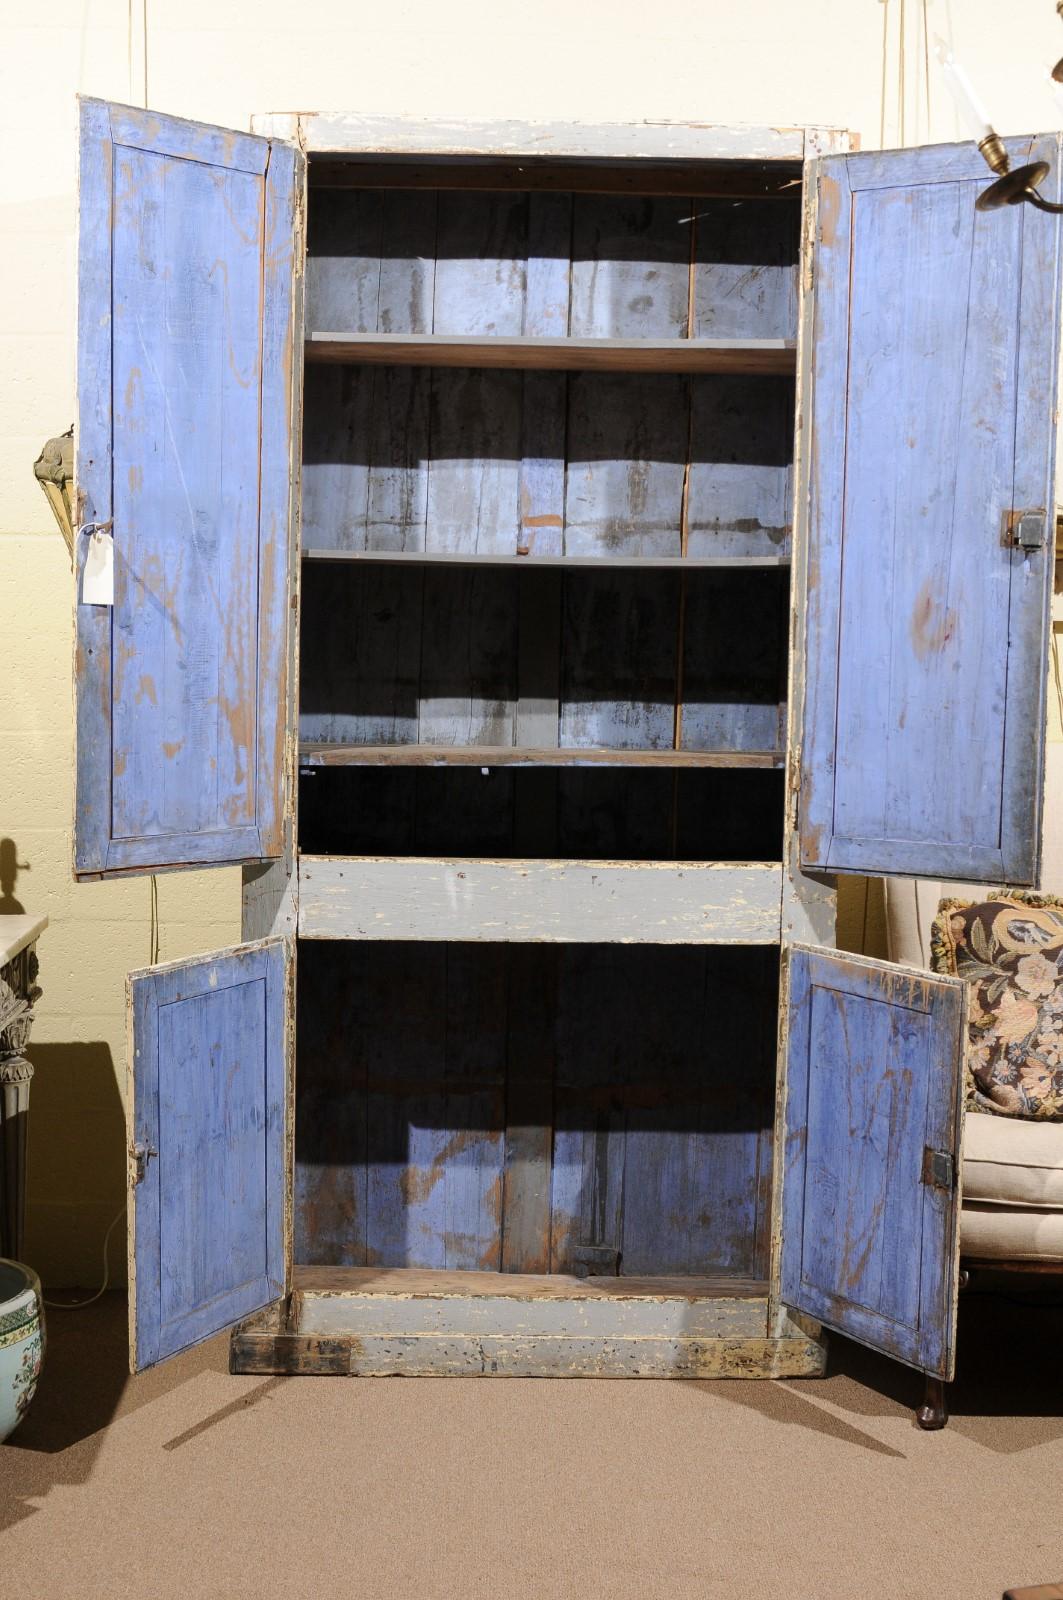 Hellblau lackierter Schrank mit 4 Schranktüren und azurblau lackiertem Interieur, 19. Jahrhundert Frankreich. Obere Schränke mit Einlegeböden. Kein Gesims vorhanden.